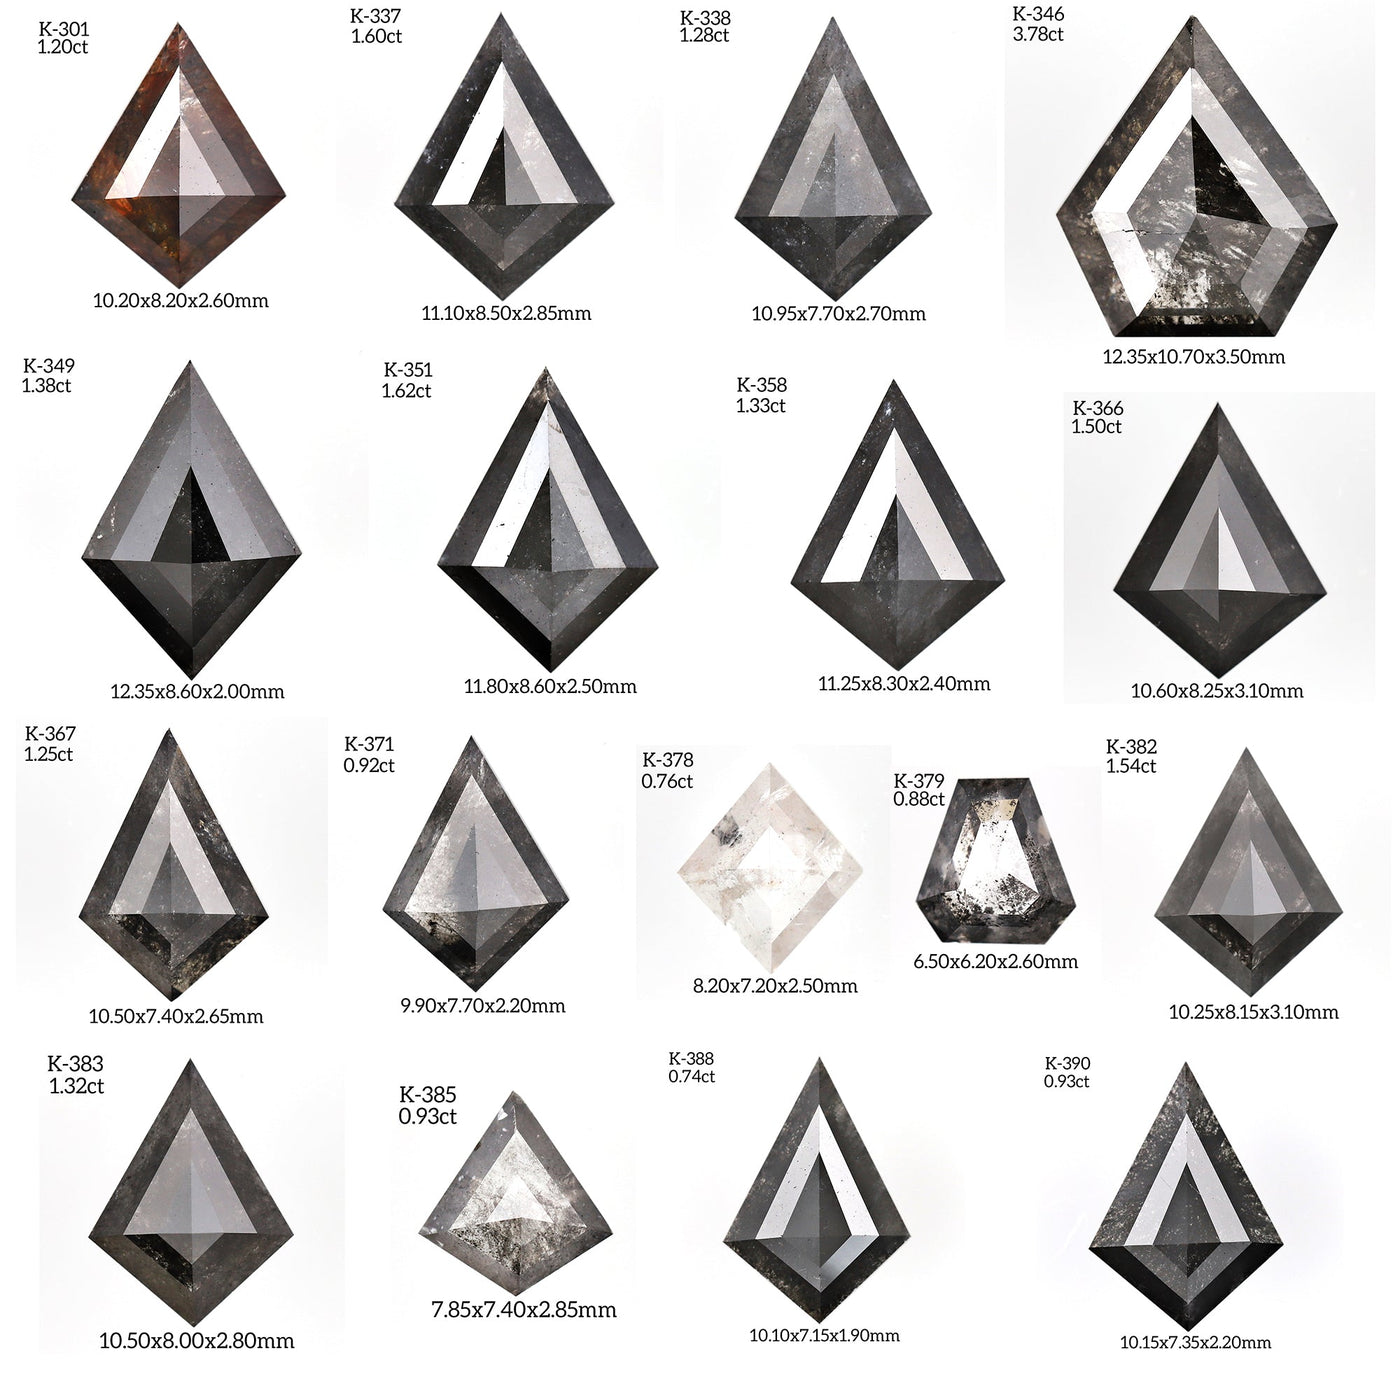 K422 - Salt and pepper kite diamond